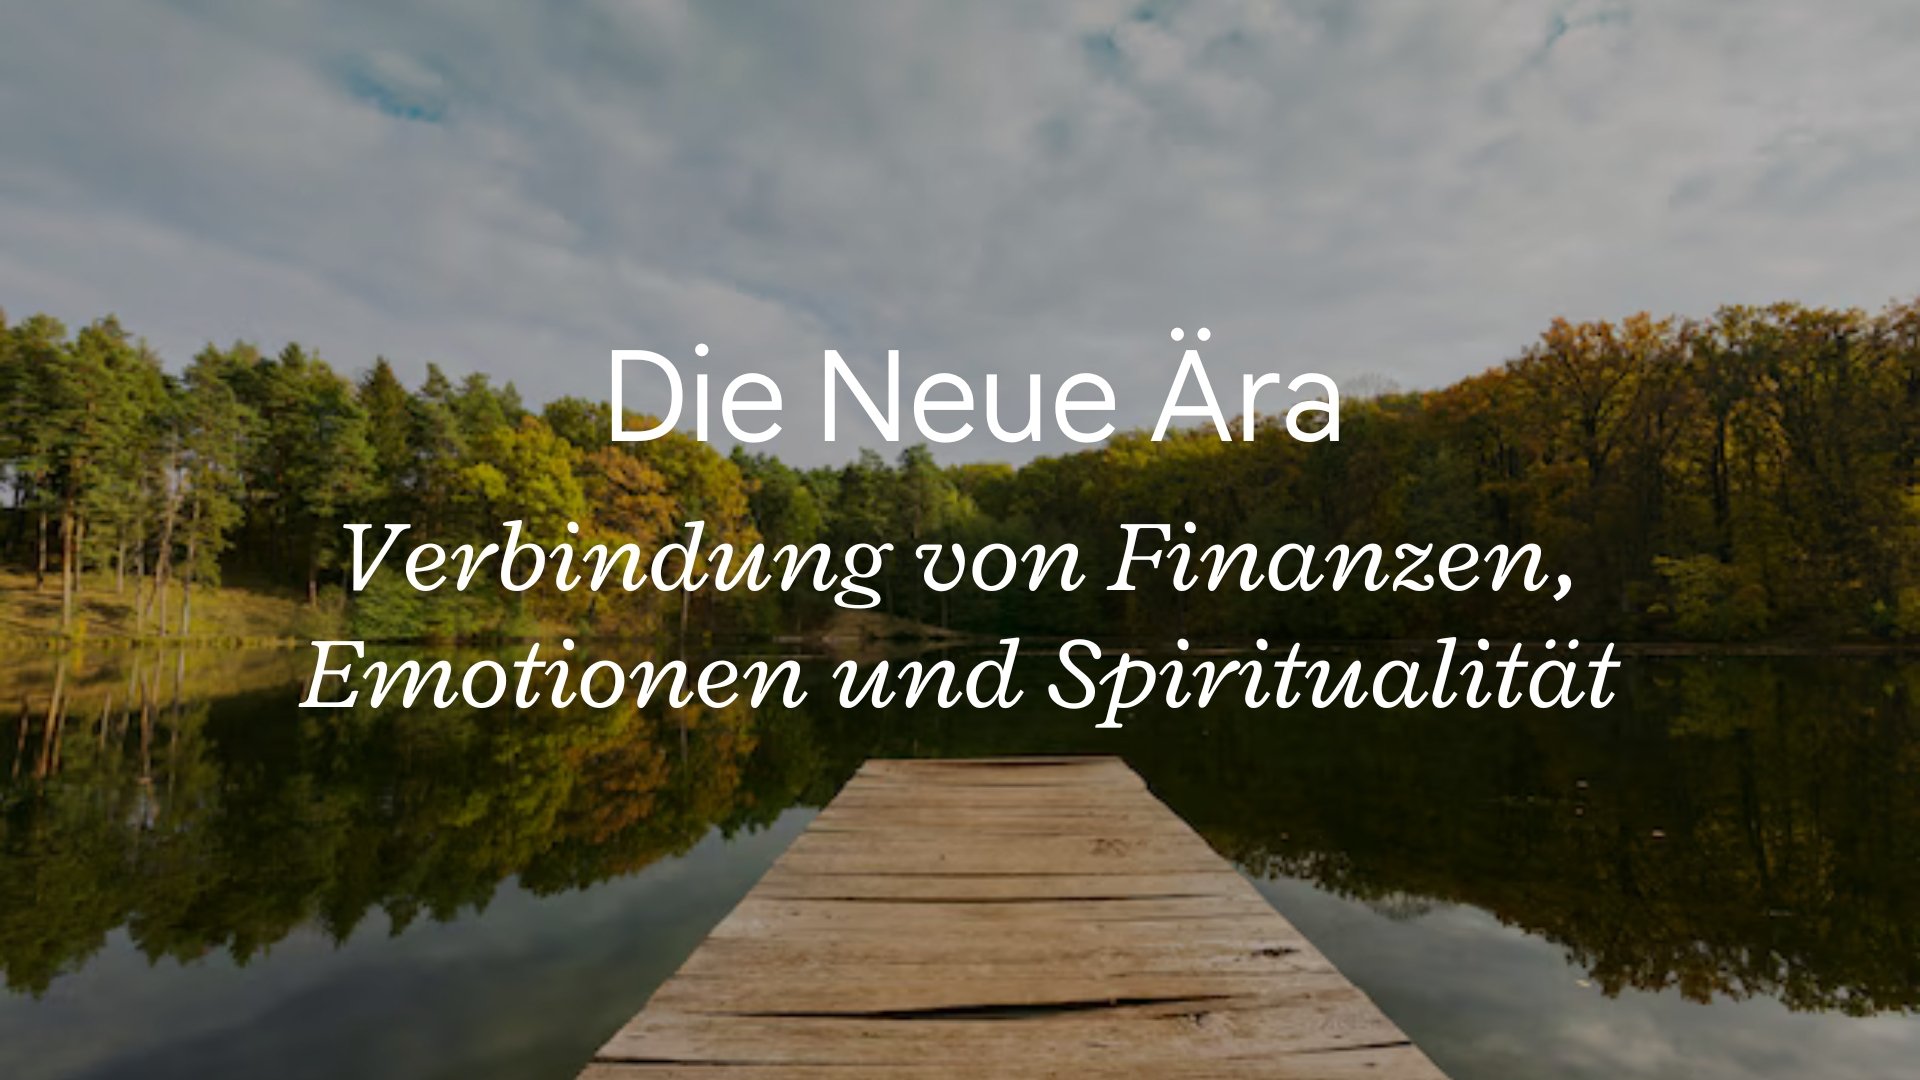 Die Neue Ära und die Verbindung von Finanzen, Emotionen und Spiritualität